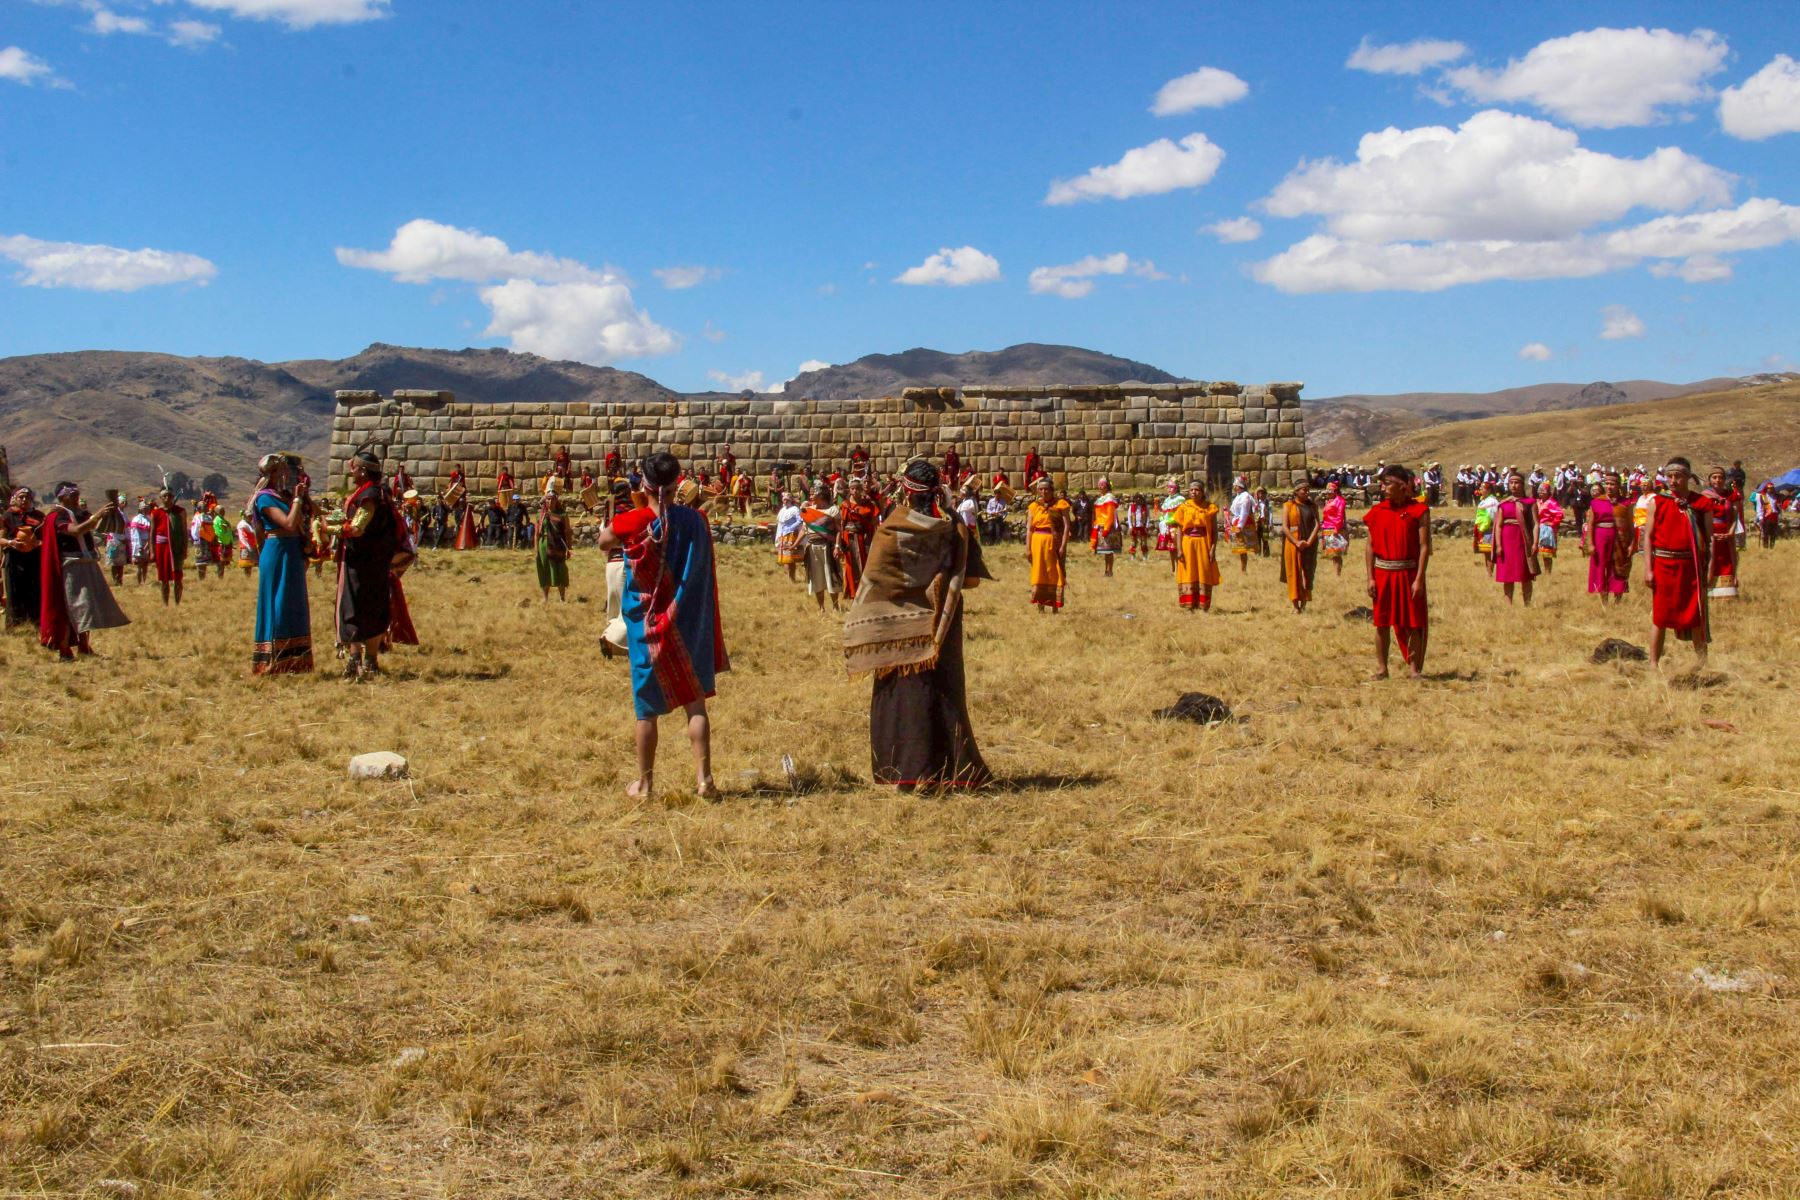 El Inti Raymi o Fiesta del Sol es la festividad de mayor tradición en los Andes peruanos. Y si bien el Cusco es más conocido como el epicentro de esta celebración, también se desarrolla con espectacular solemnidad en el distrito de La Unión, provincia de Dos de Mayo, región Huánuco, desde hace más de 20 años.Foto: ANDINA/Cortesia Jeny Valladares